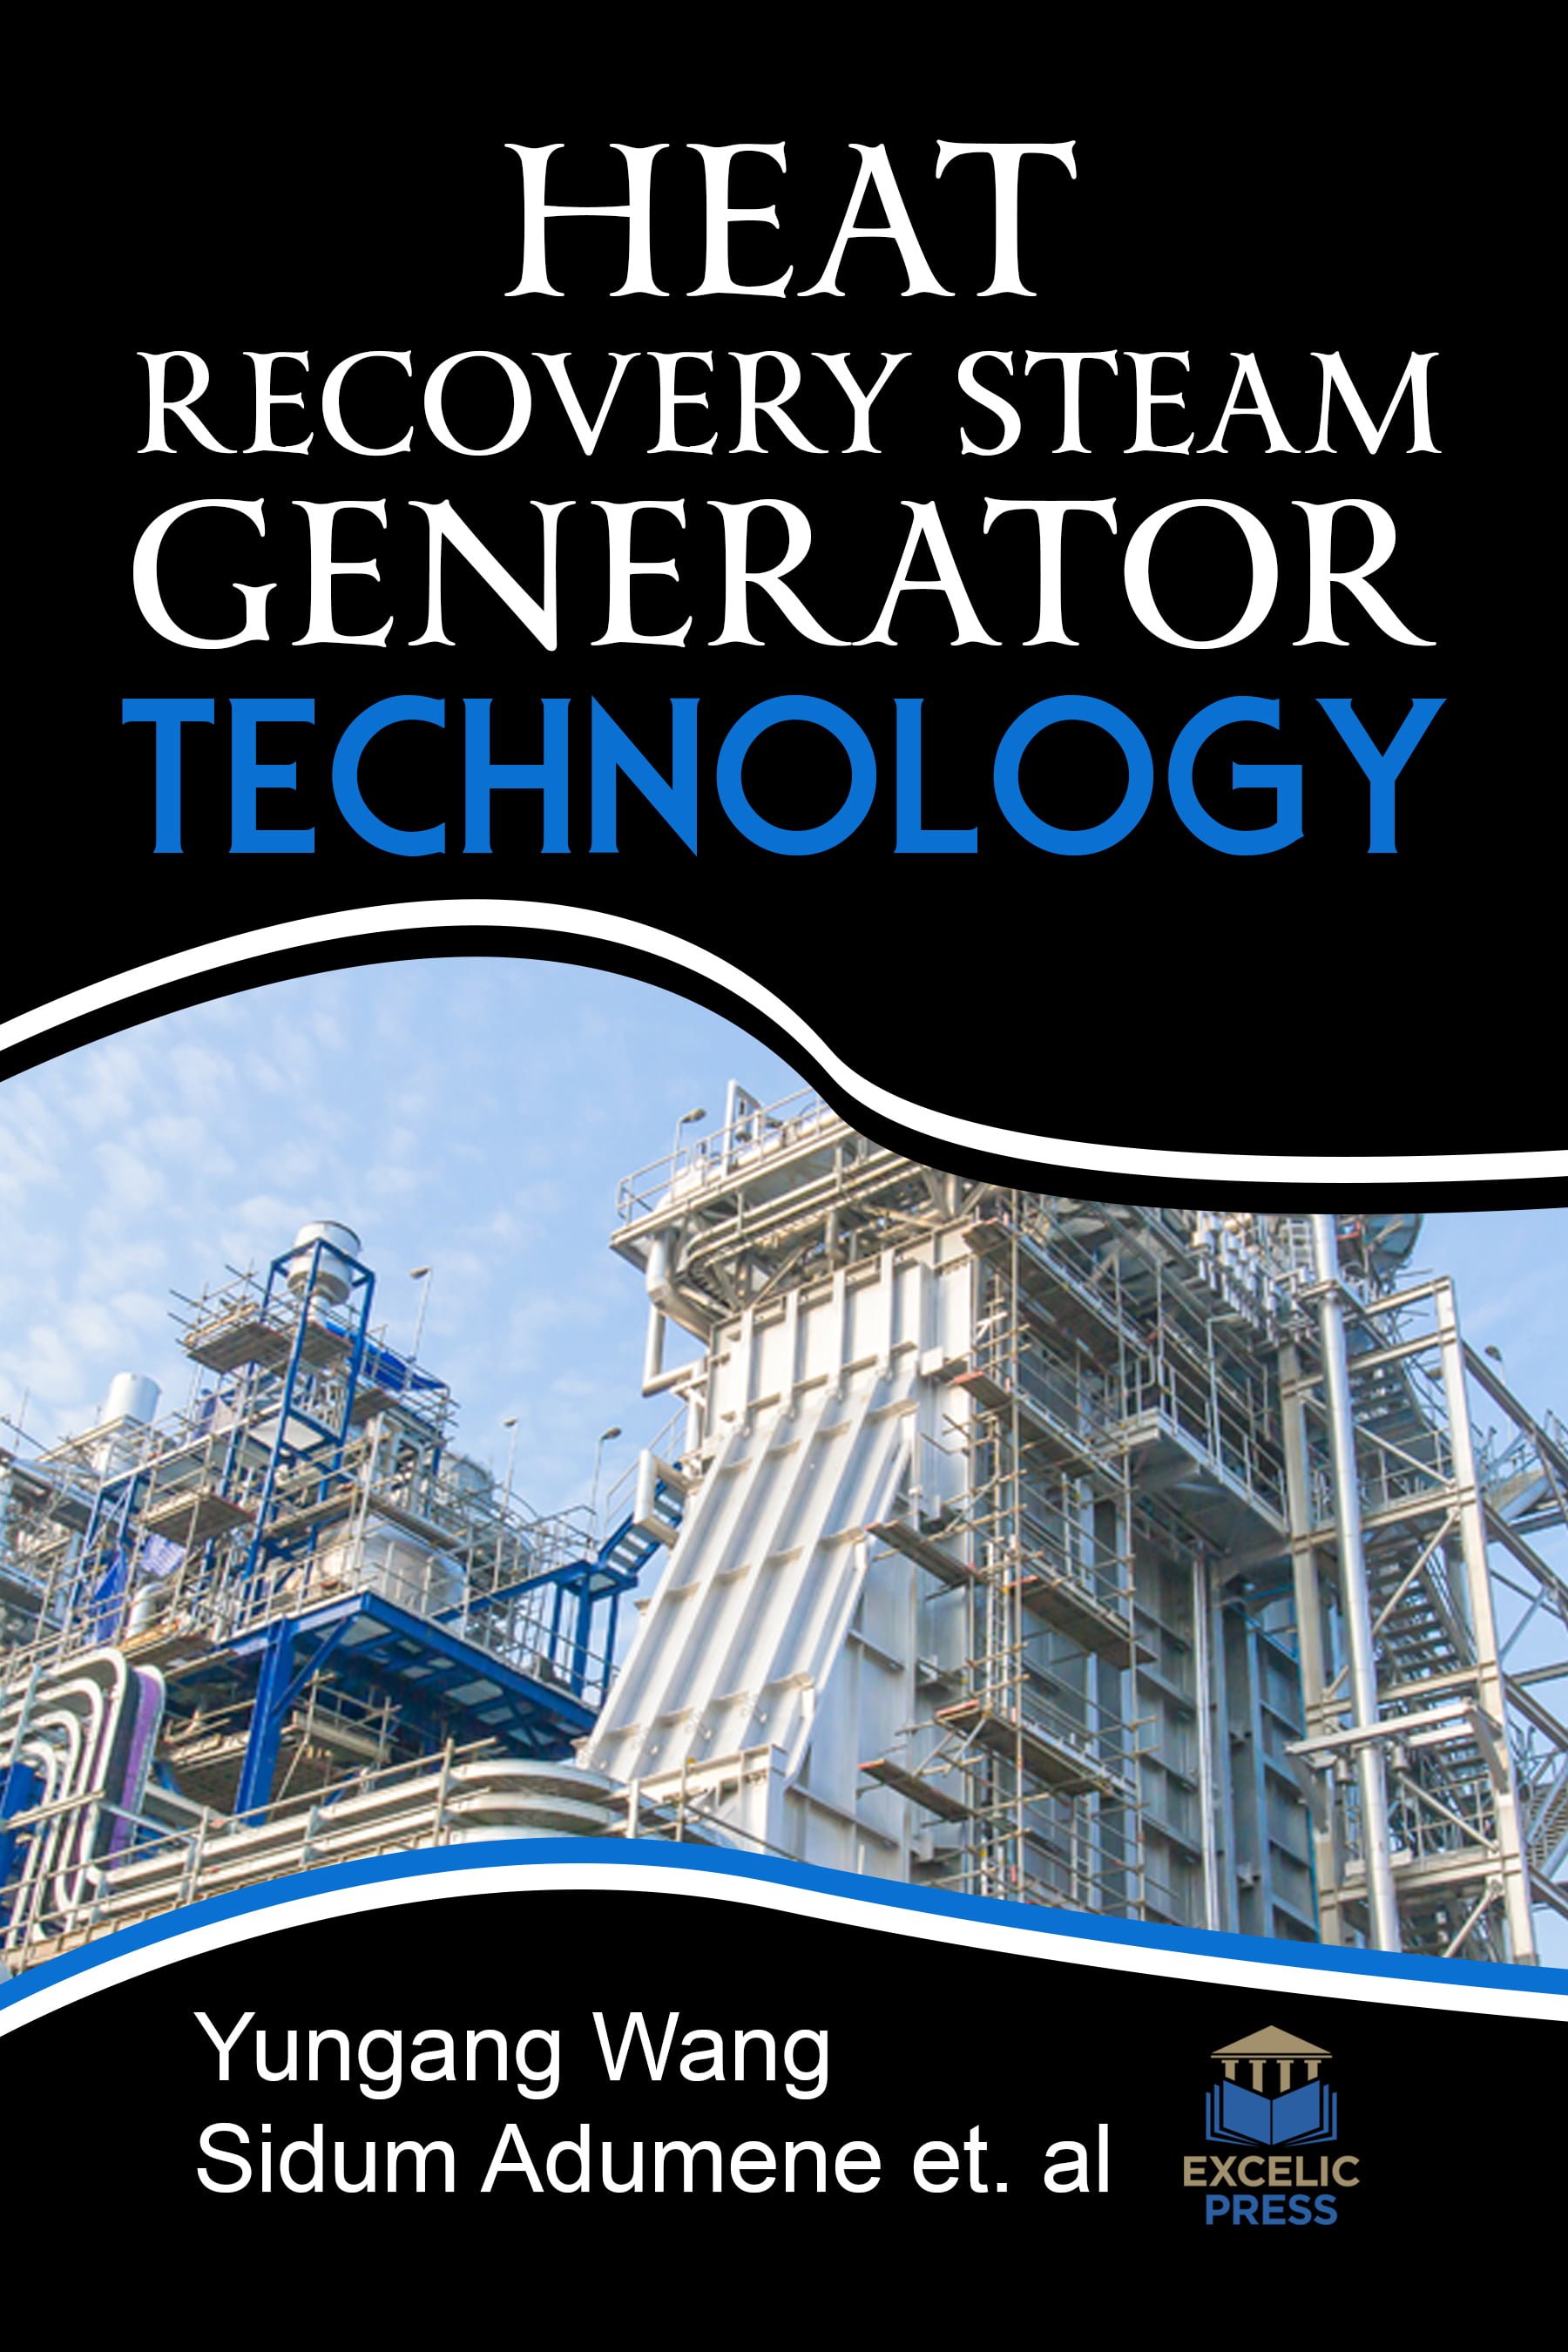 خرید ایبوک Heat Recovery Steam Generator Technology دانلود کتاب تکنولوژی تولید ژنراتور احیا کننده گرما download PDF خرید کتاب از امازون گیگاپیپر